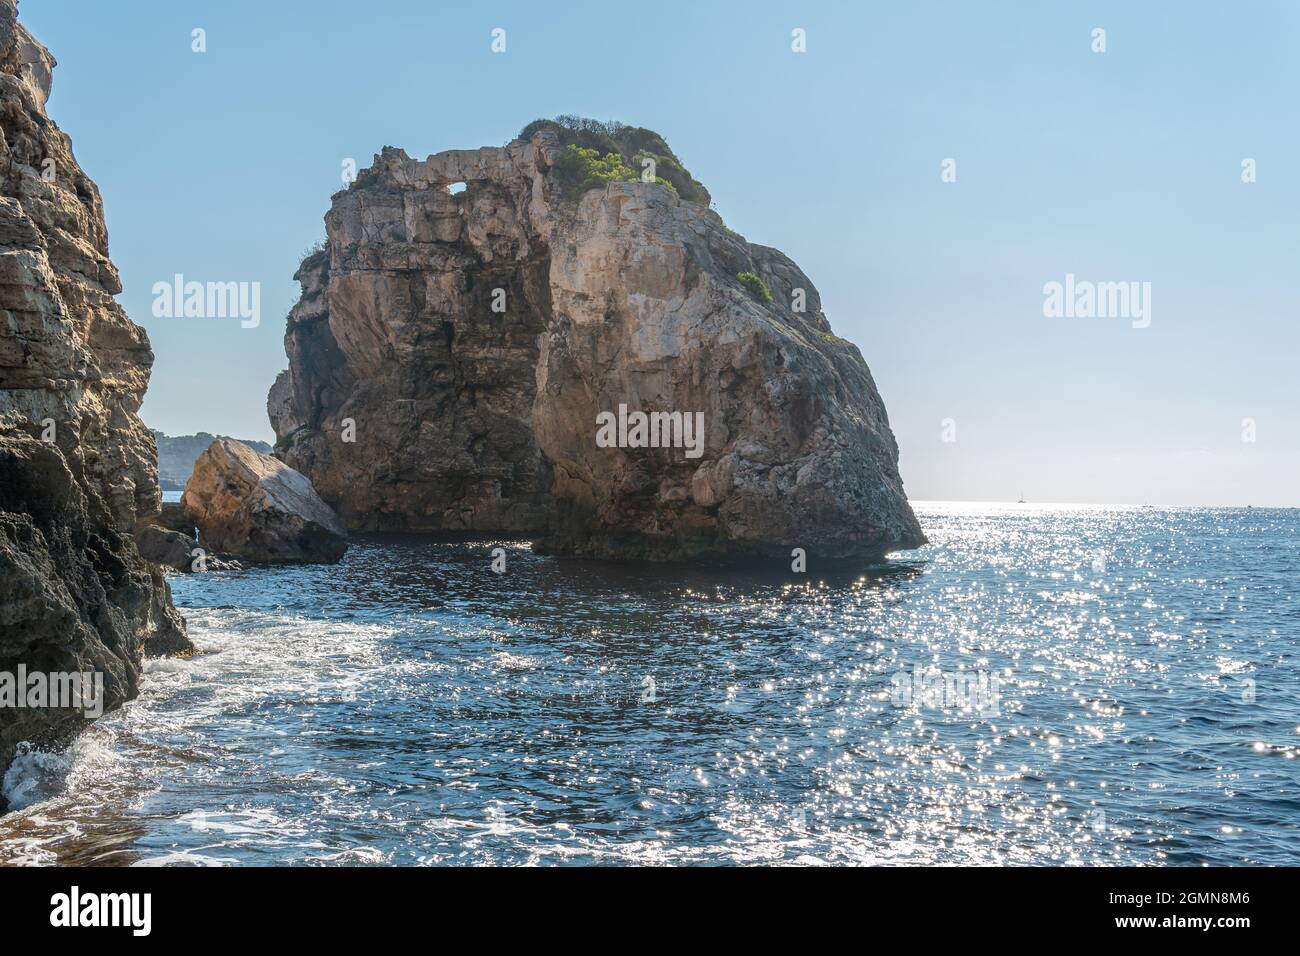 Formation rocheuse d'es Pontas sur la côte sud de l'île de Majorque au lever du soleil. Attraction touristique de la nature sauvage de la mer Méditerranée Banque D'Images